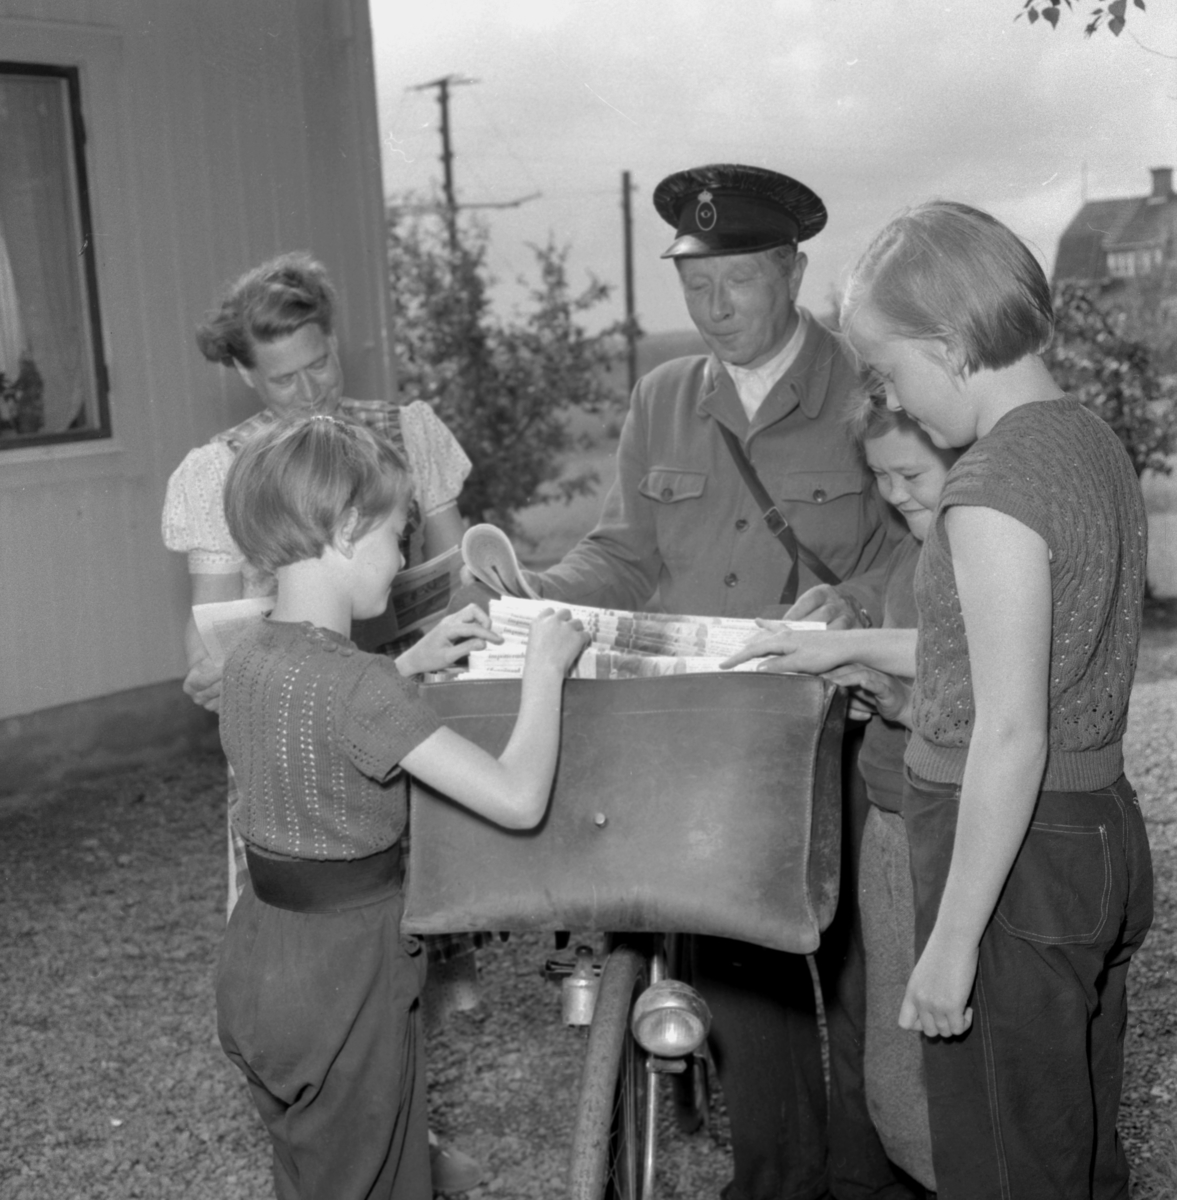 Lantbrevbärare i Mullhyttan. Bildsidan.
14 augusti 1955